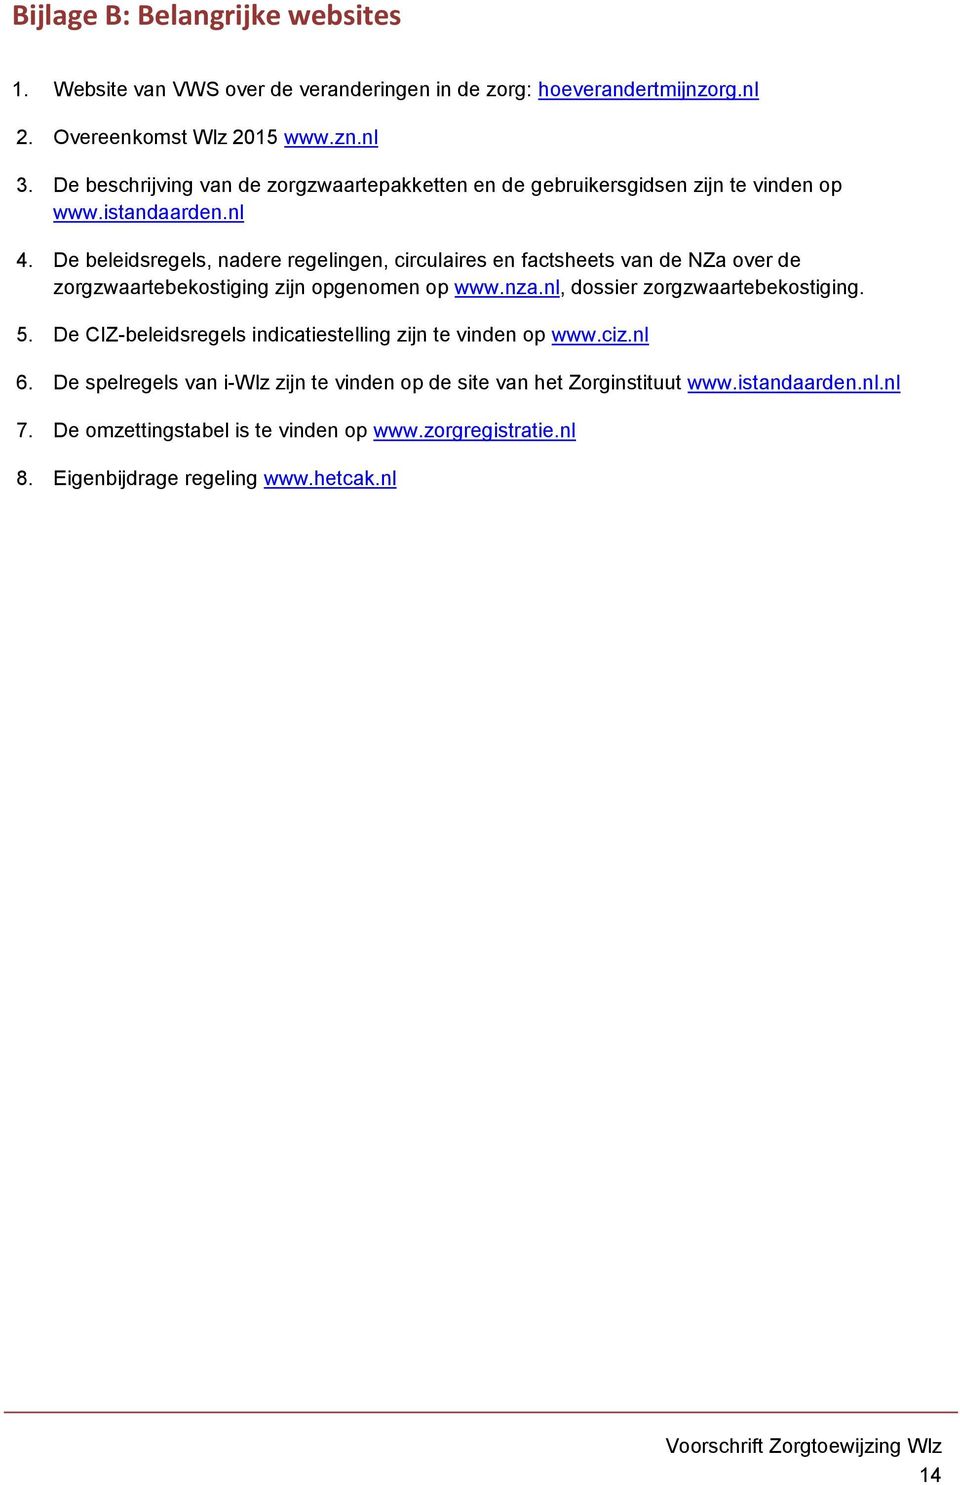 De beleidsregels, nadere regelingen, circulaires en factsheets van de NZa over de zorgzwaartebekostiging zijn opgenomen op www.nza.nl, dossier zorgzwaartebekostiging. 5.